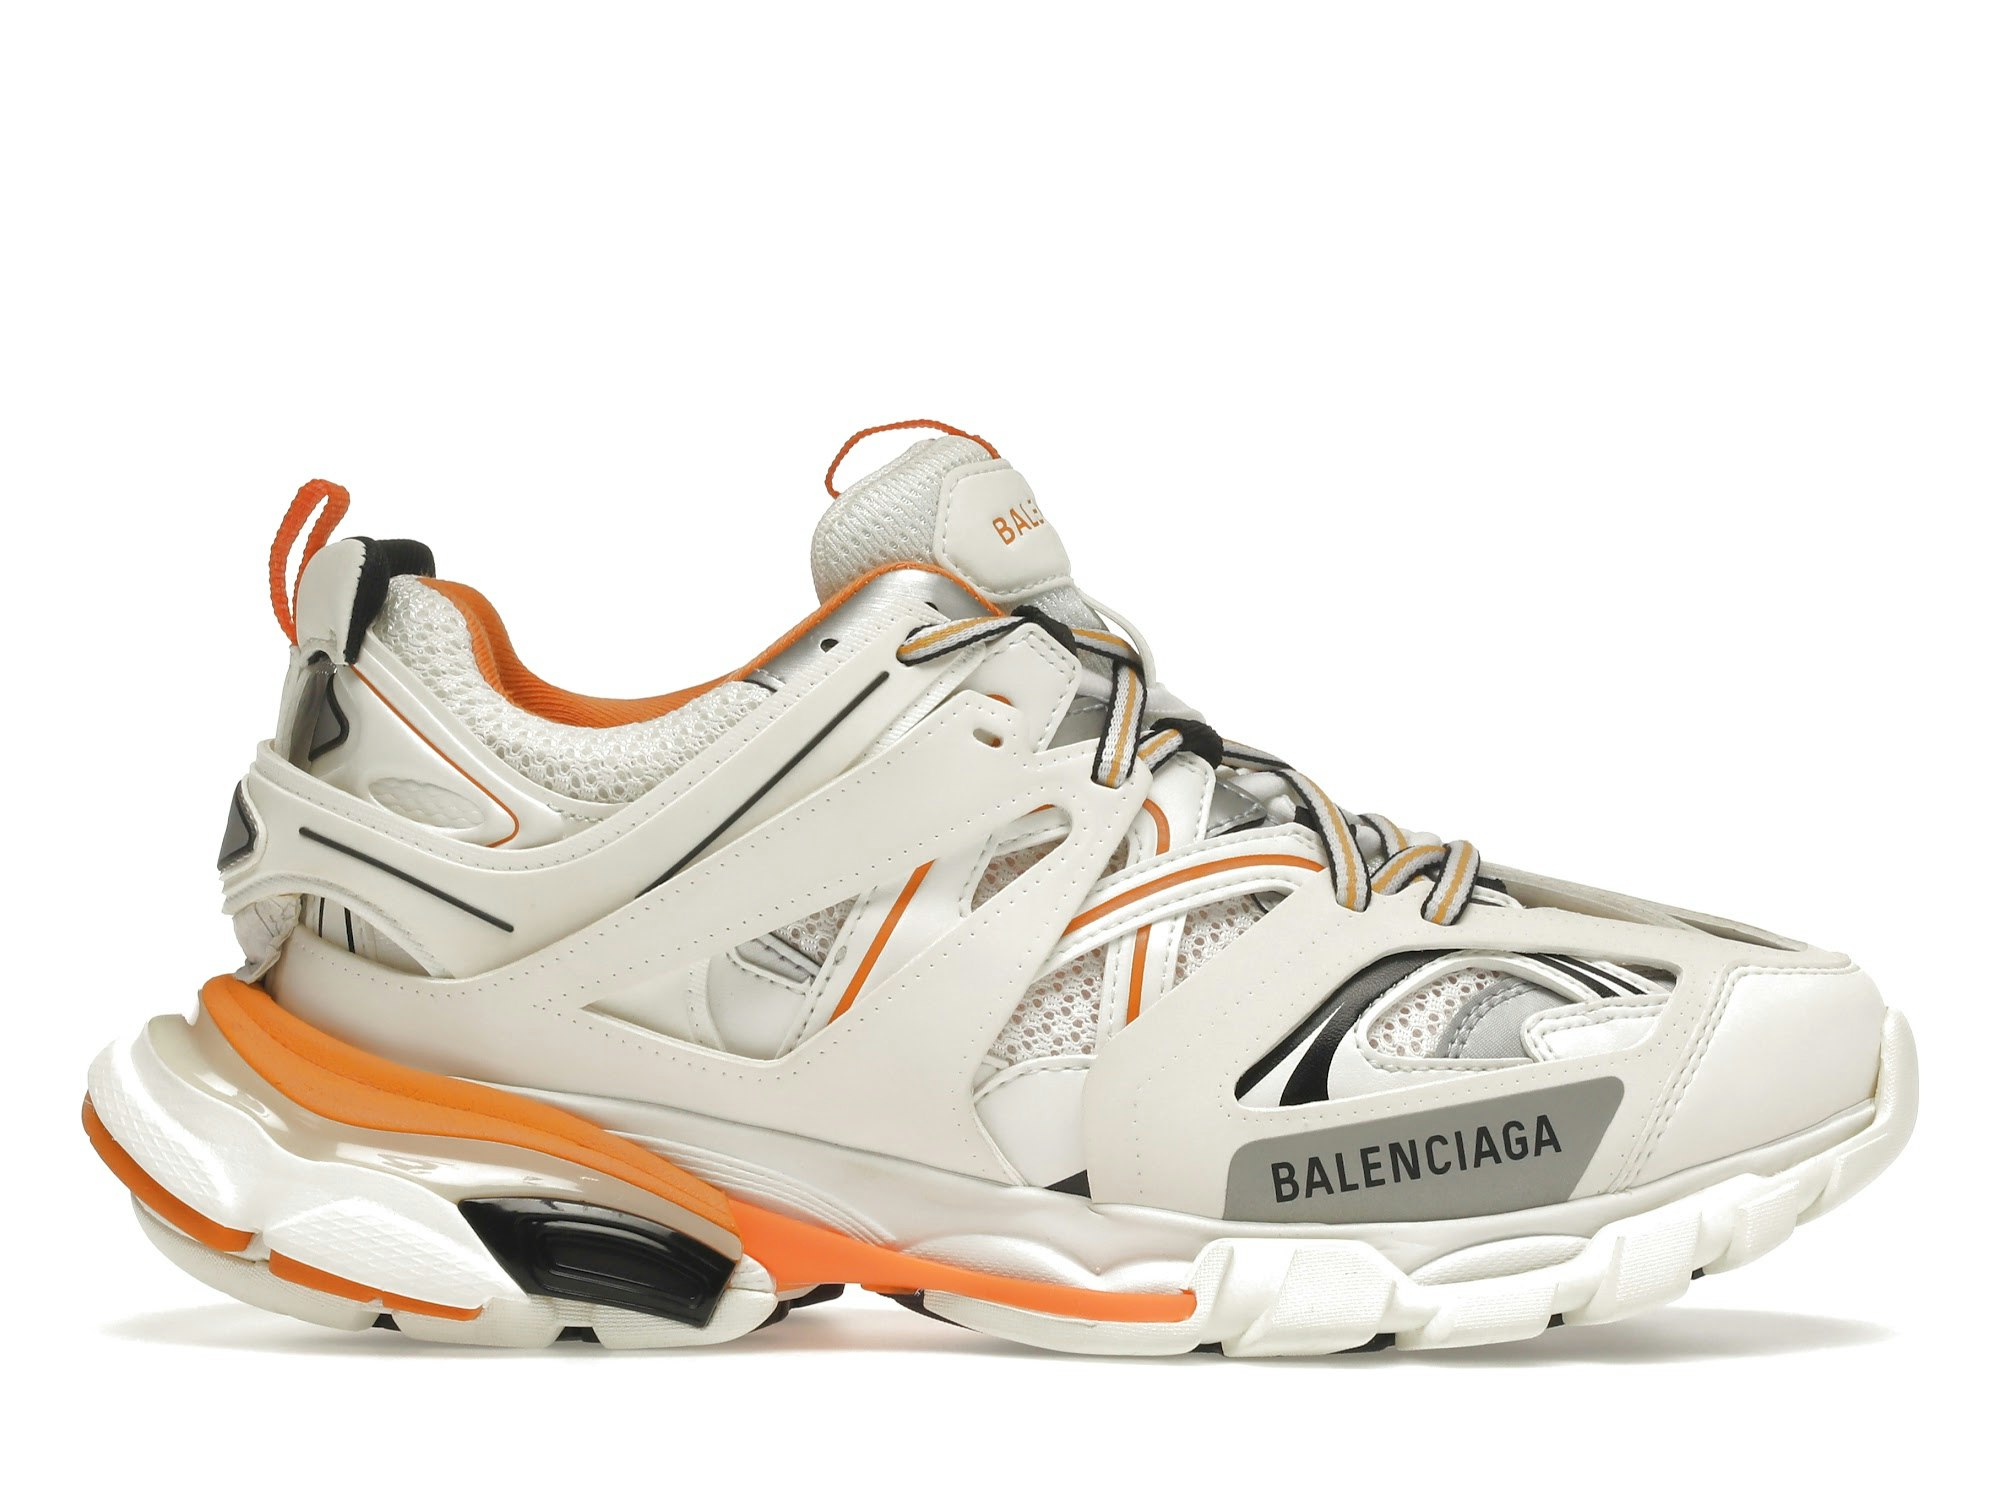 Balenciaga track sneakers on Mercari | Pretty shoes sneakers, Trendy shoes  sneakers, Swag shoes